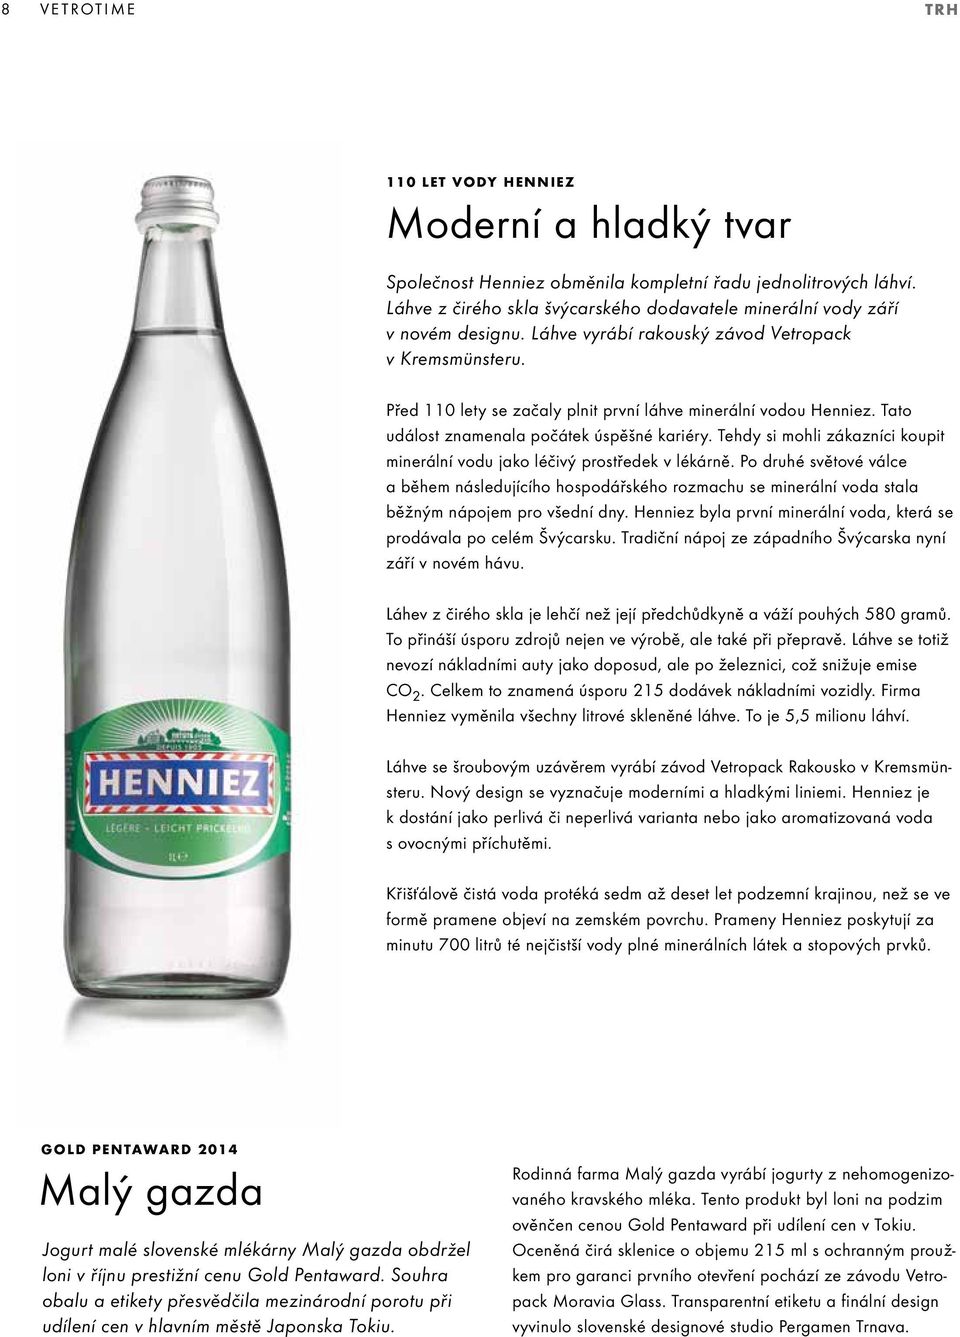 Před 110 lety se začaly plnit první láhve minerální vodou Henniez. Tato událost znamenala počátek úspěšné kariéry. Tehdy si mohli zákazníci koupit minerální vodu jako léčivý prostředek v lékárně.